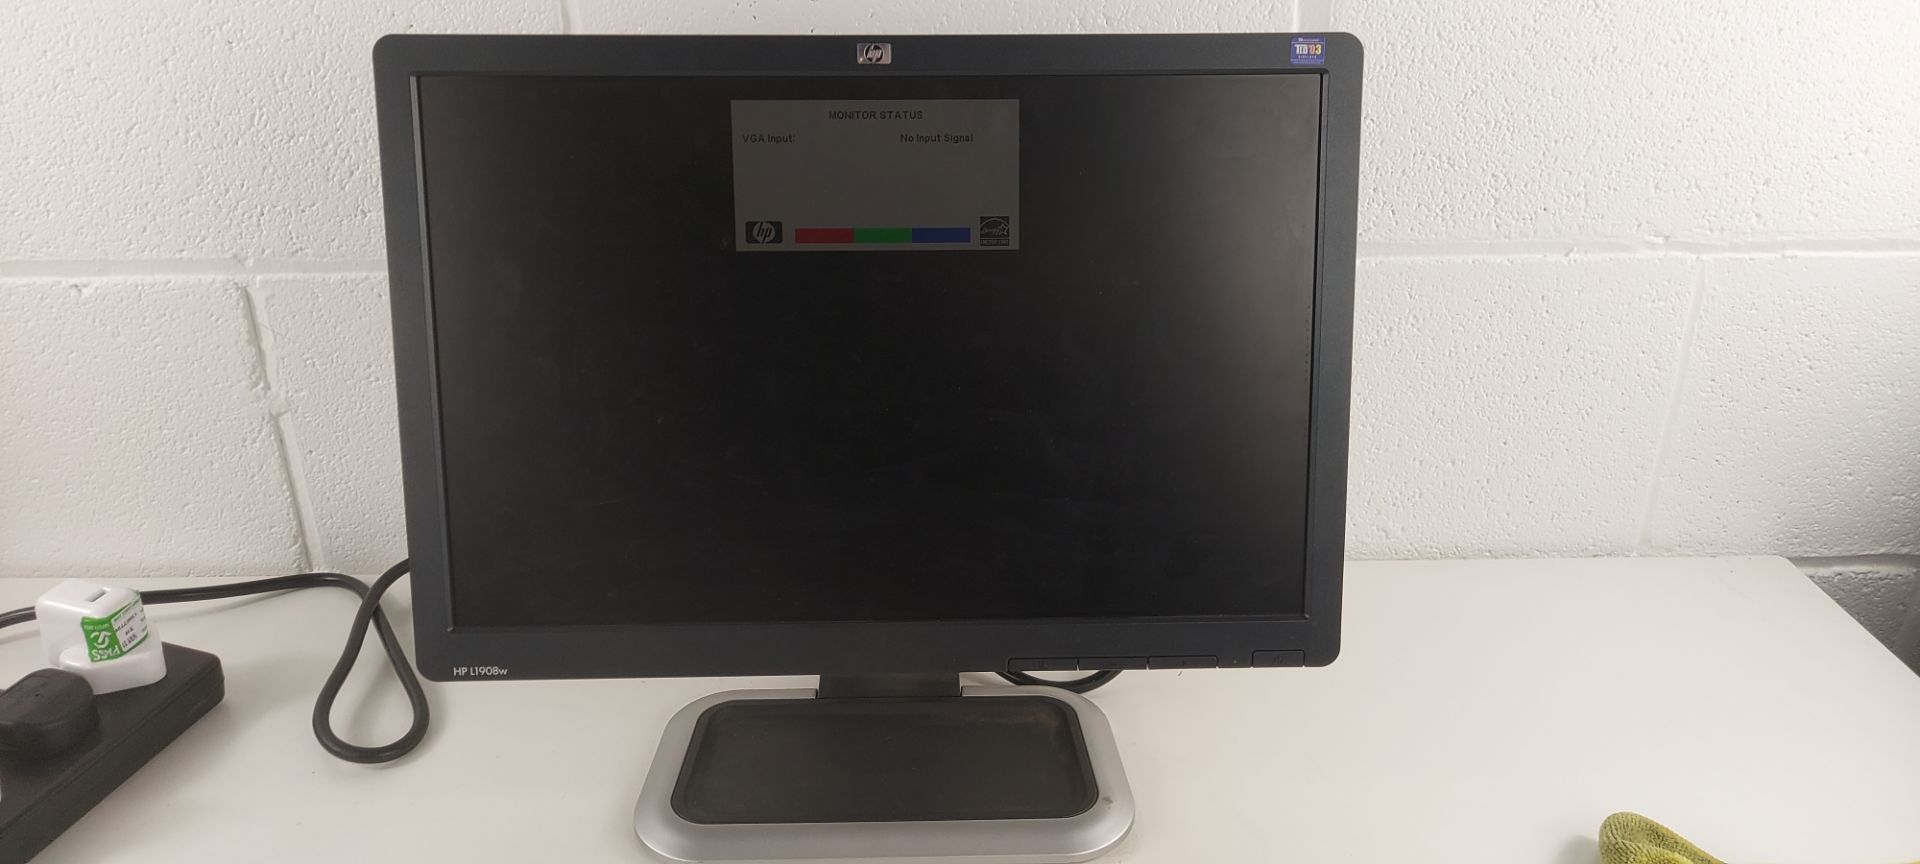 HP L1908w, 19" LCD Monitor